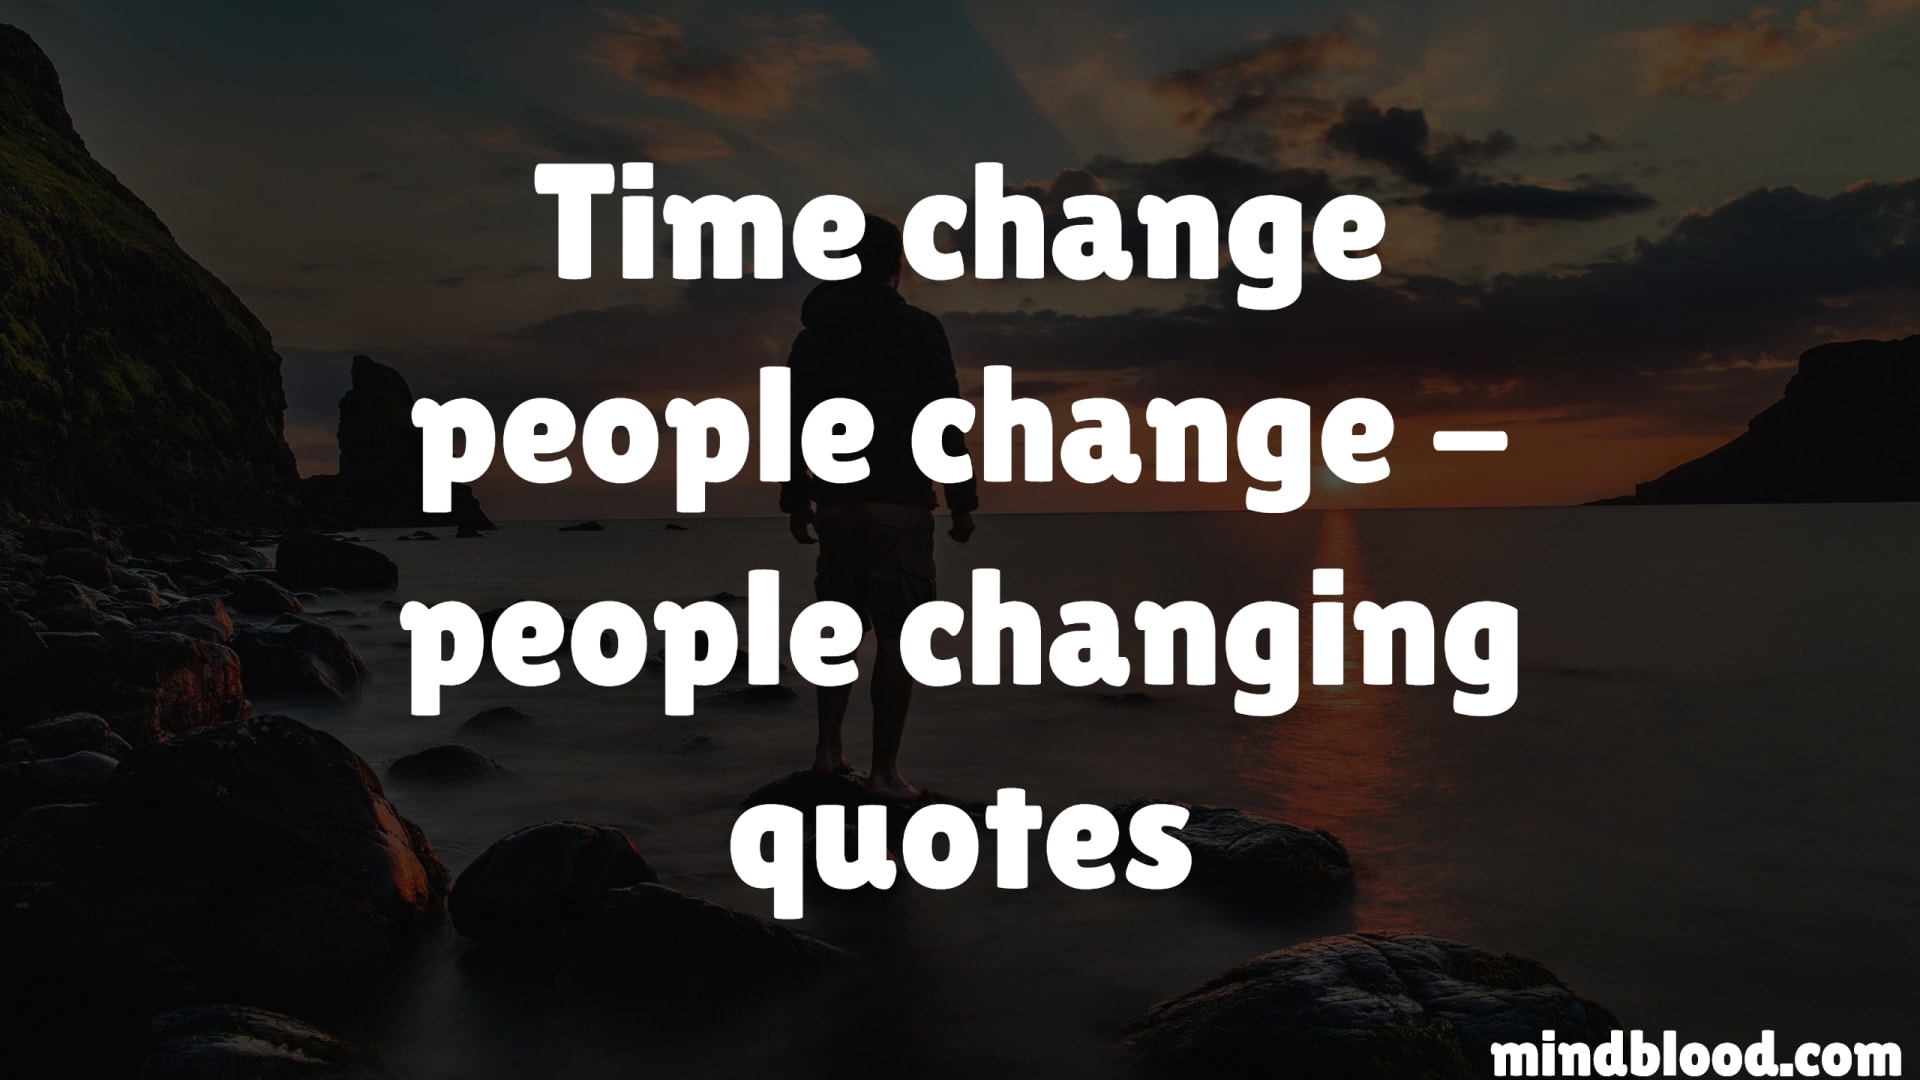 Time change people change - people changing quotes